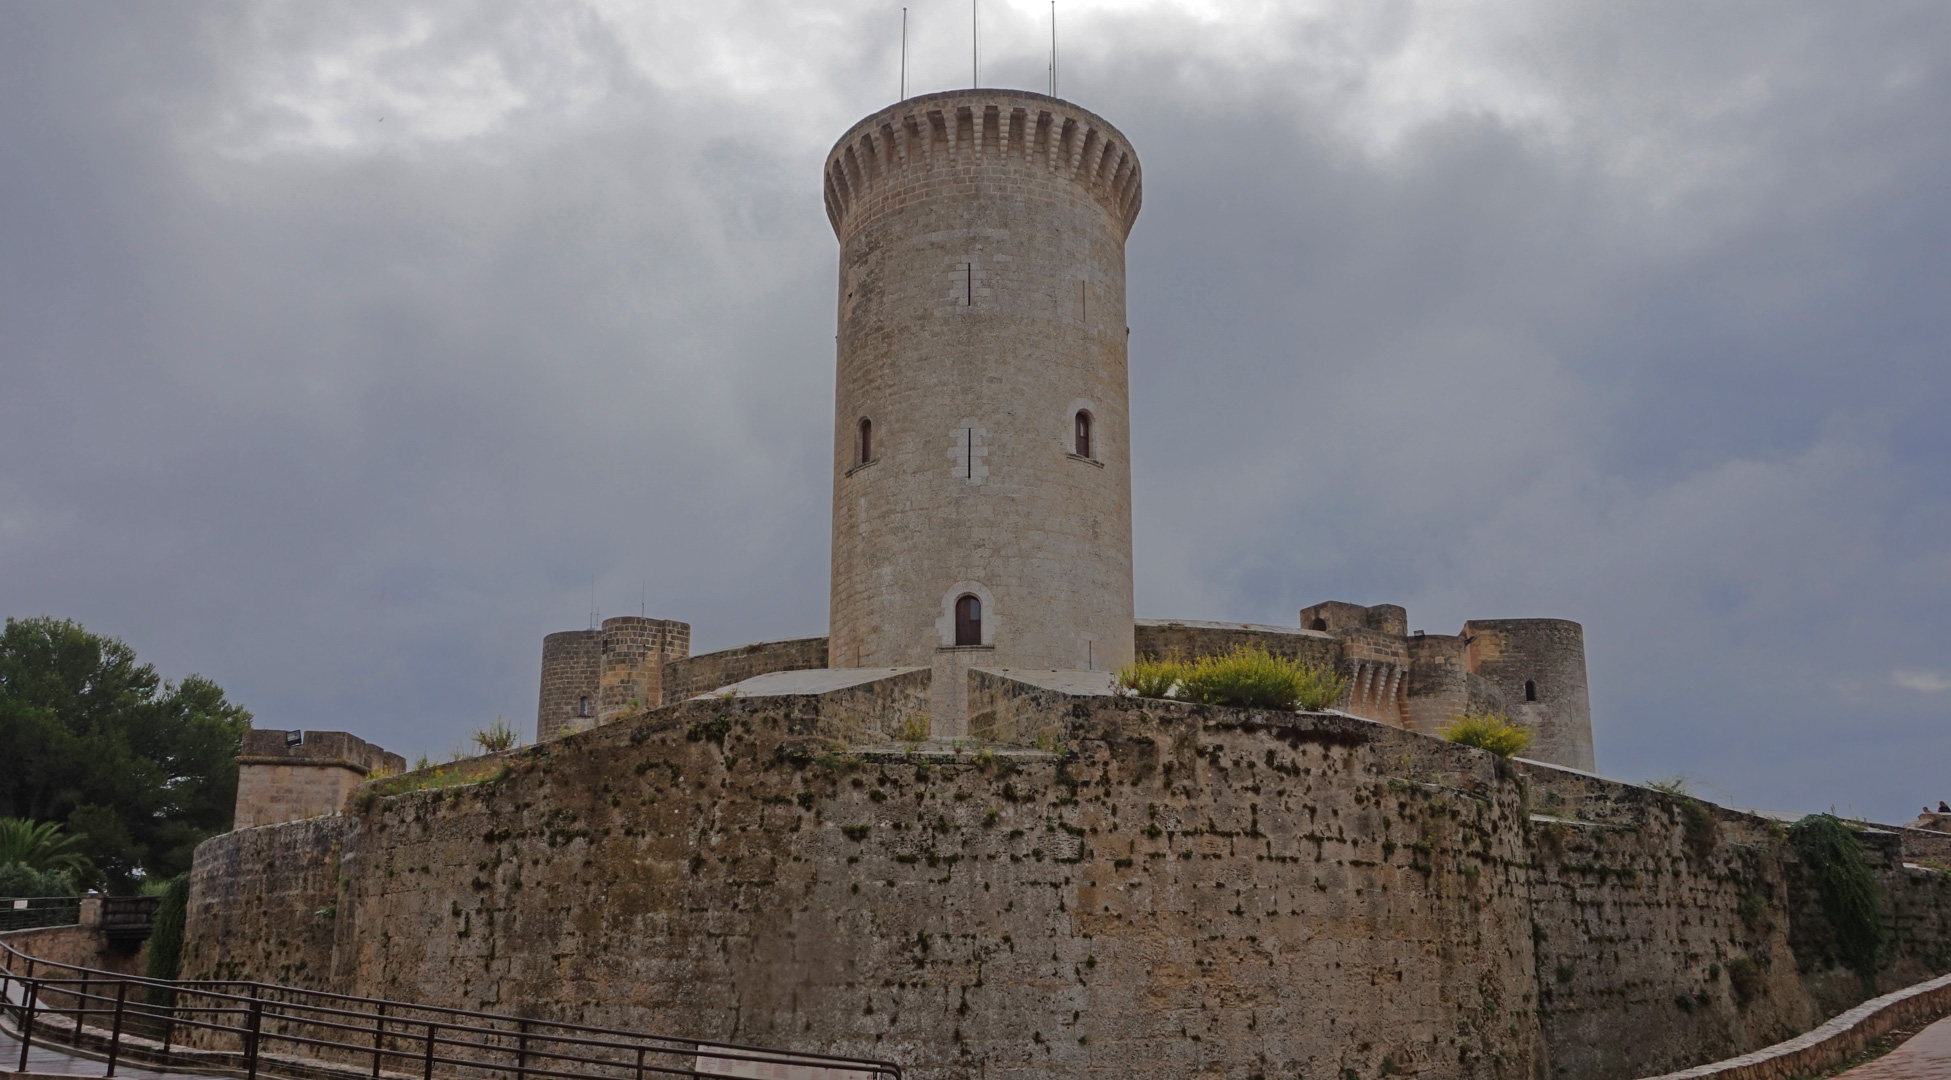 Das Castell de Bellver thront inmitten bedrohlicher Wolken